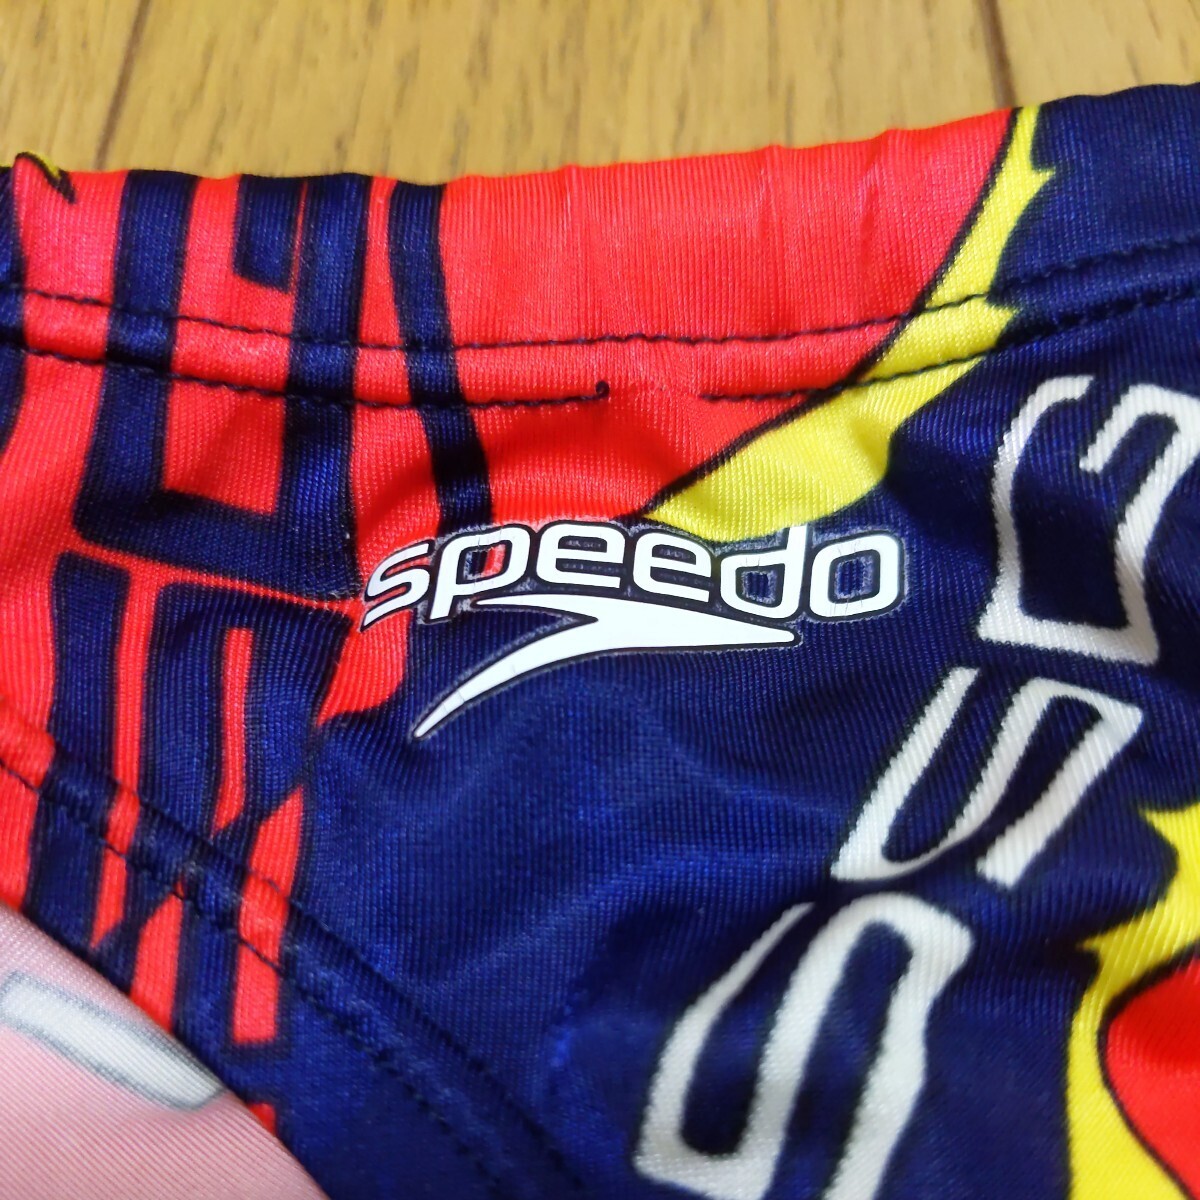 イトマンスイミングスクール ISSG アクアブレード 選手コース Mサイズ SPEEDO 競パン 競泳水着 スピード MIZUNO ミズノ ISS_ロゴひび割れ、一部糸のほつれあり